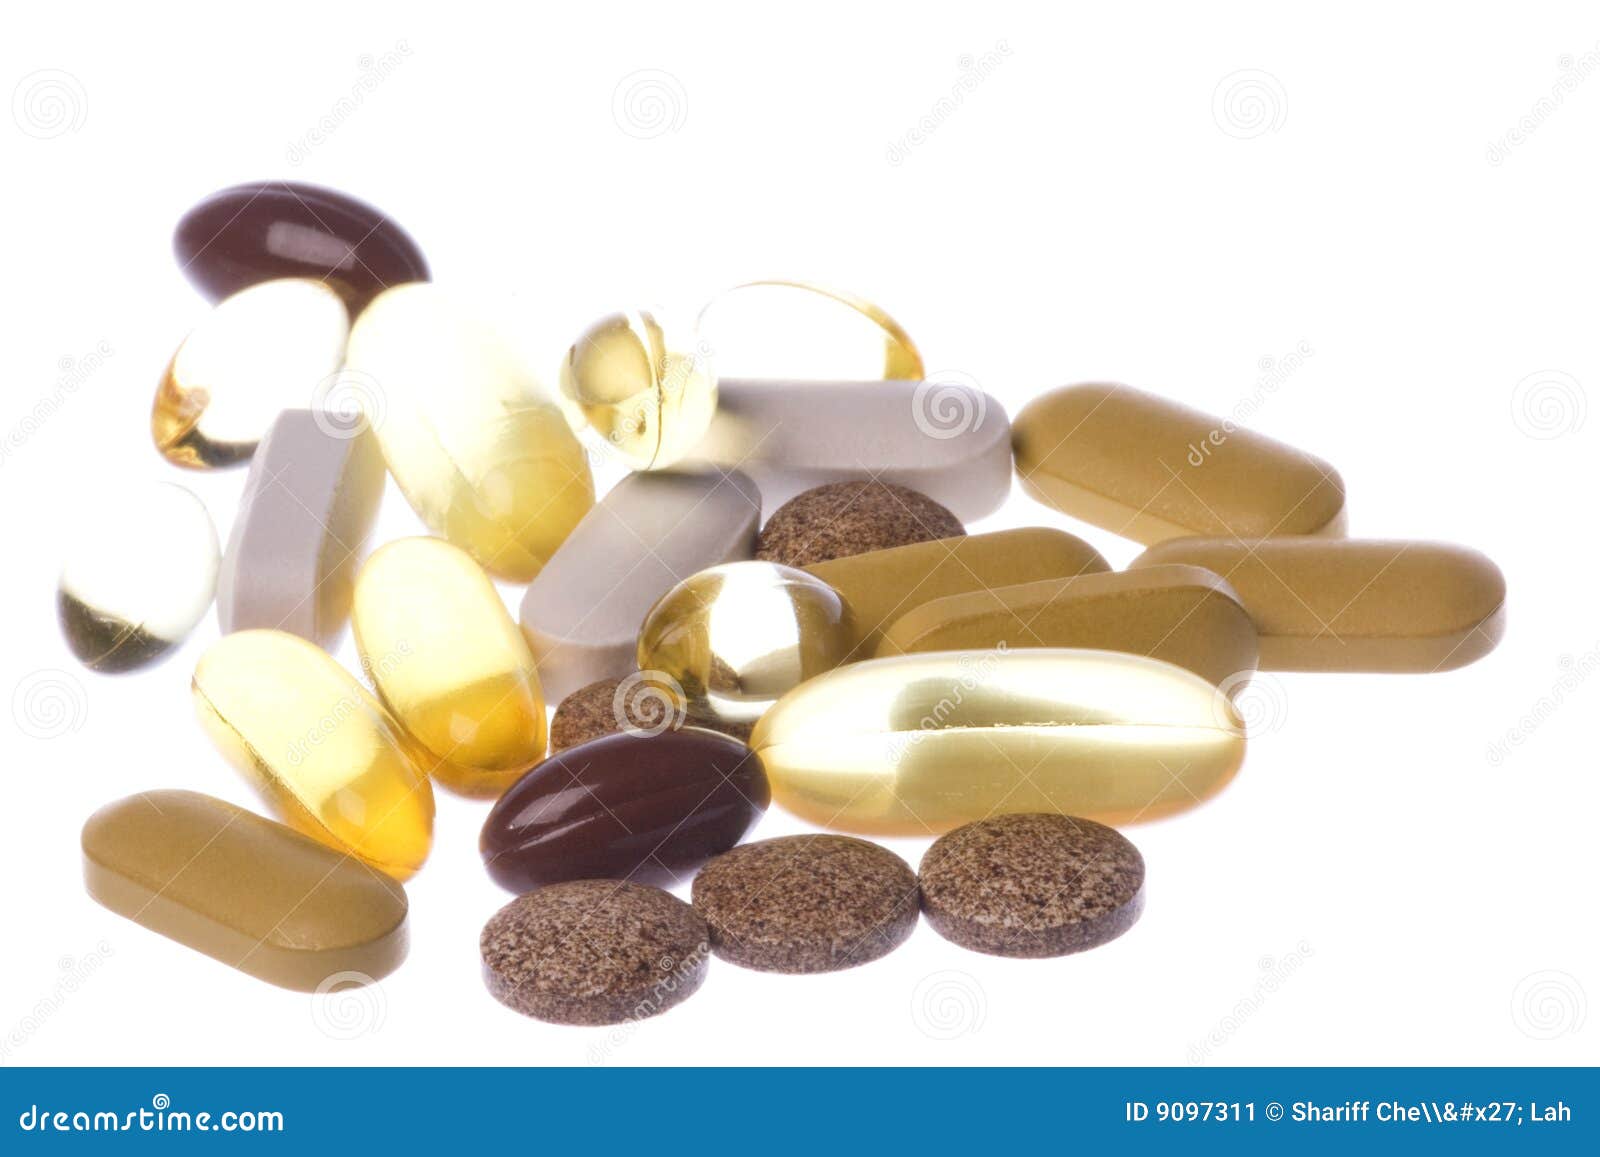 health supplements macro 